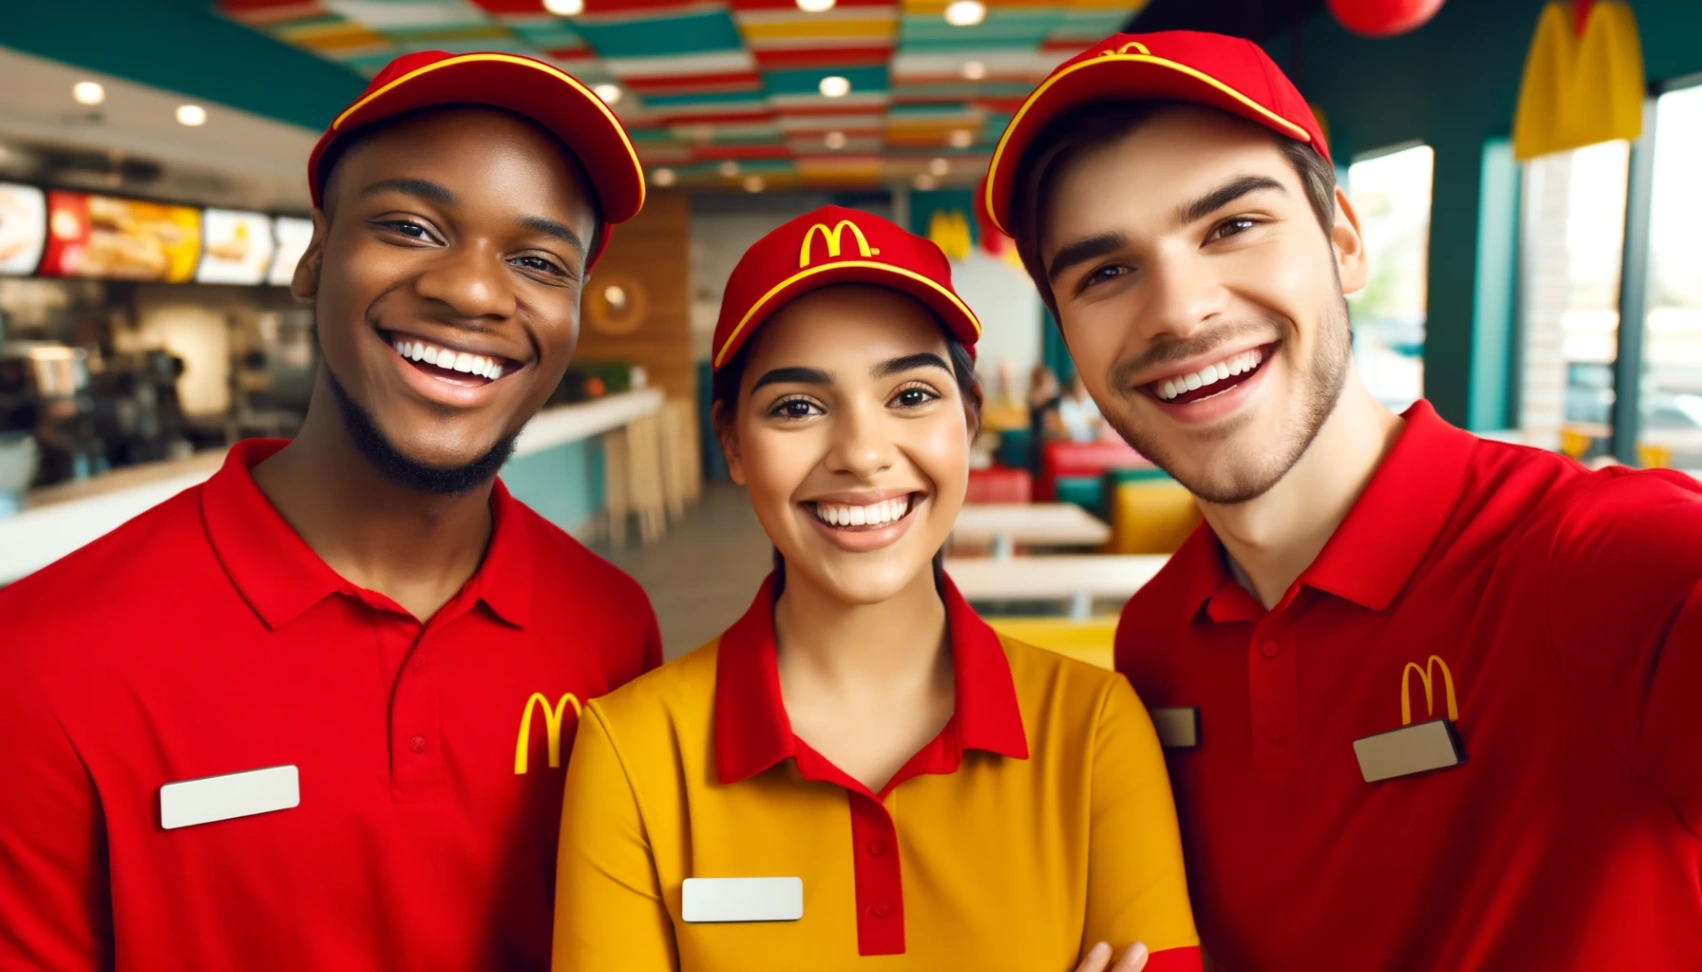 McDonald's Darba Pieteikums: Tavs ceļš uz aizraujošām iespējām